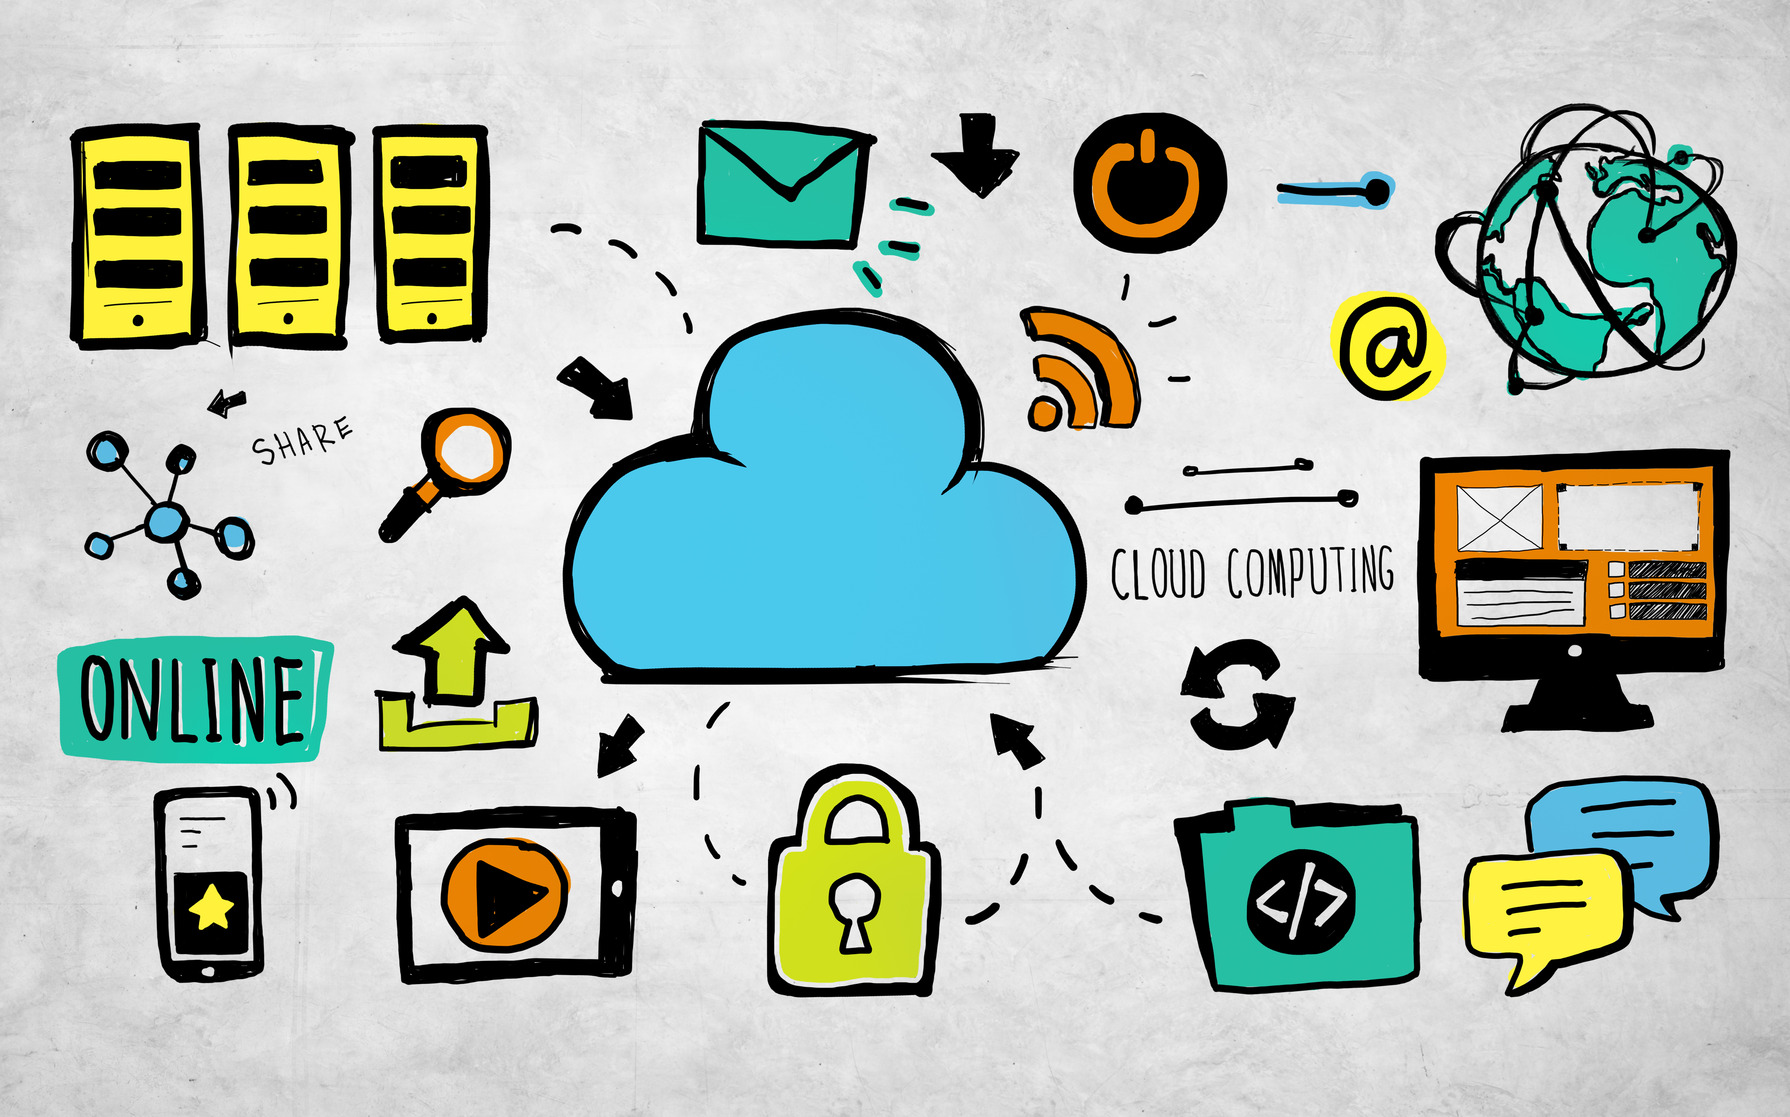 Datensicherheit in der Cloud